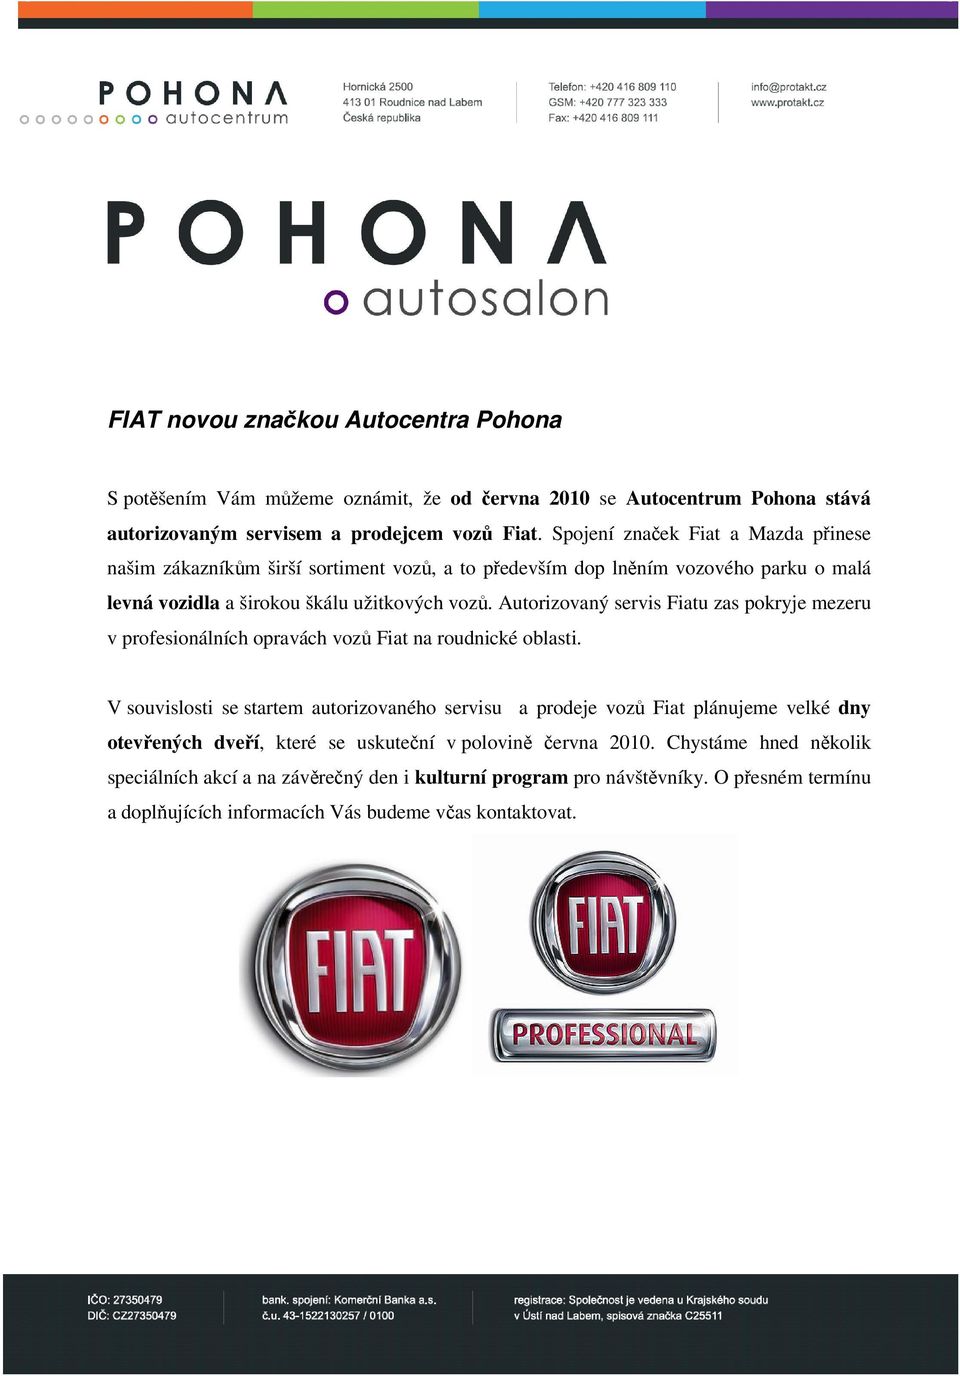 Autorizovaný servis Fiatu zas pokryje mezeru v profesionálních opravách vozů Fiat na roudnické oblasti.